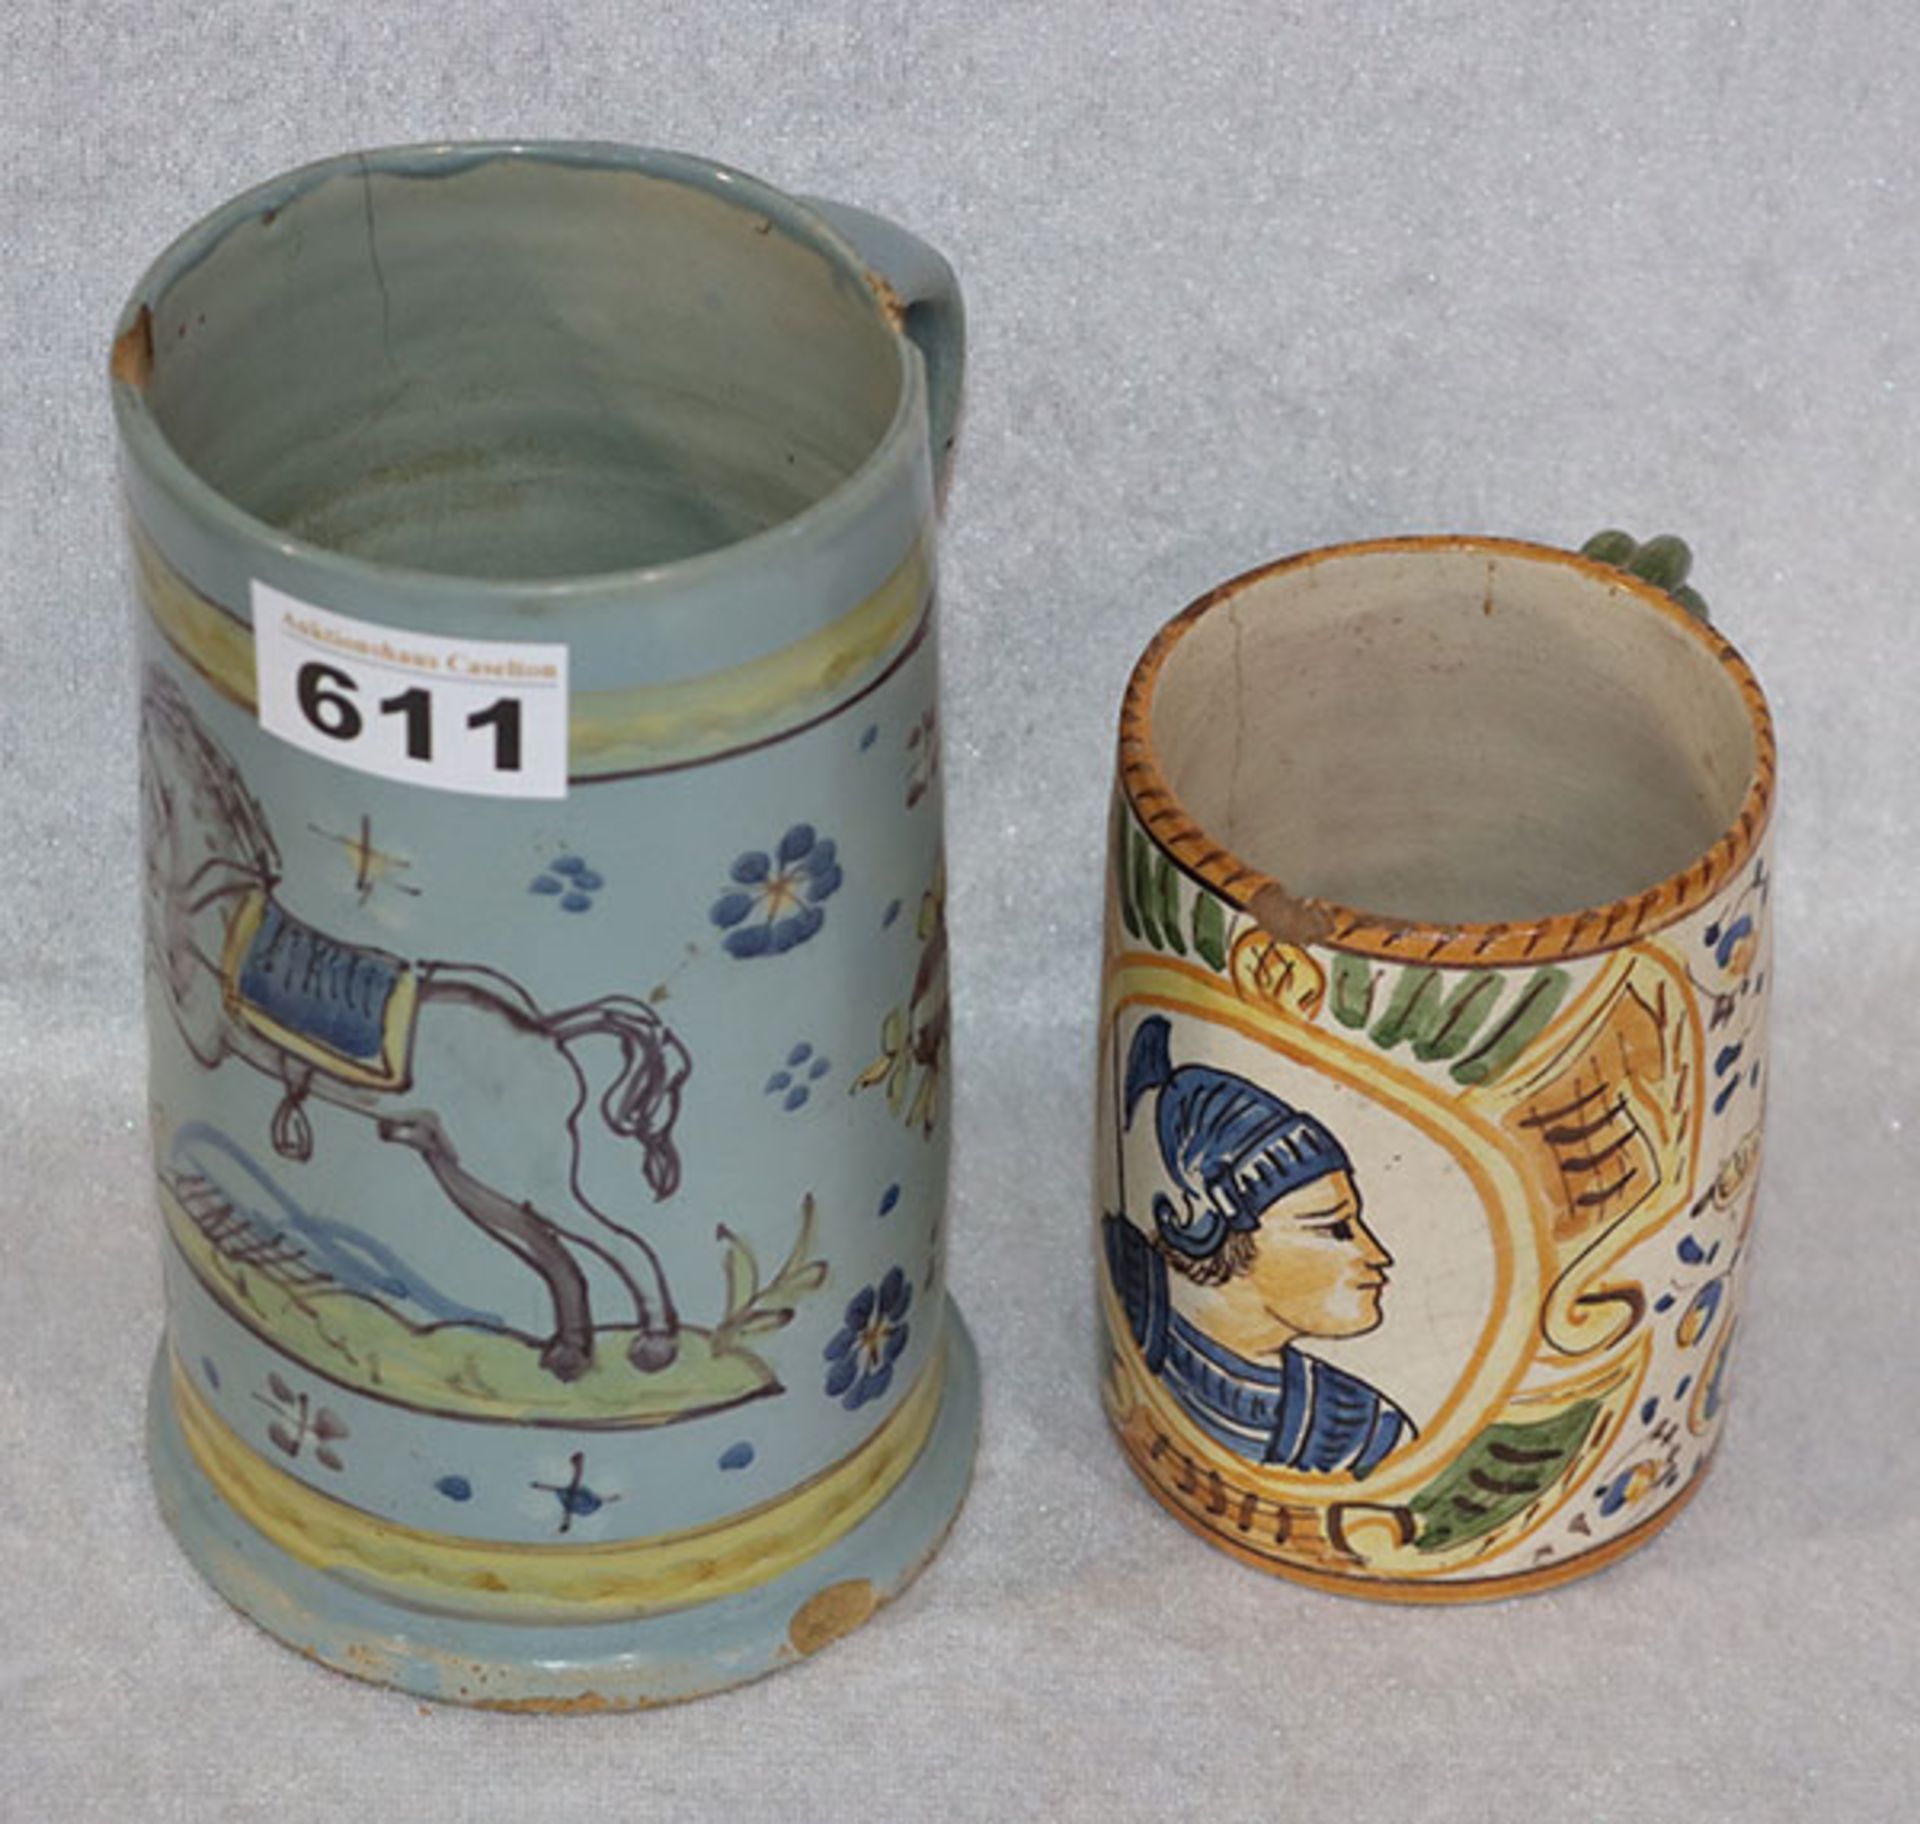 Fayence Henkelkrug mit Pferdedekor, um 1800, H 17 cm, beschädigt, und Porzellan Bierkrug mit